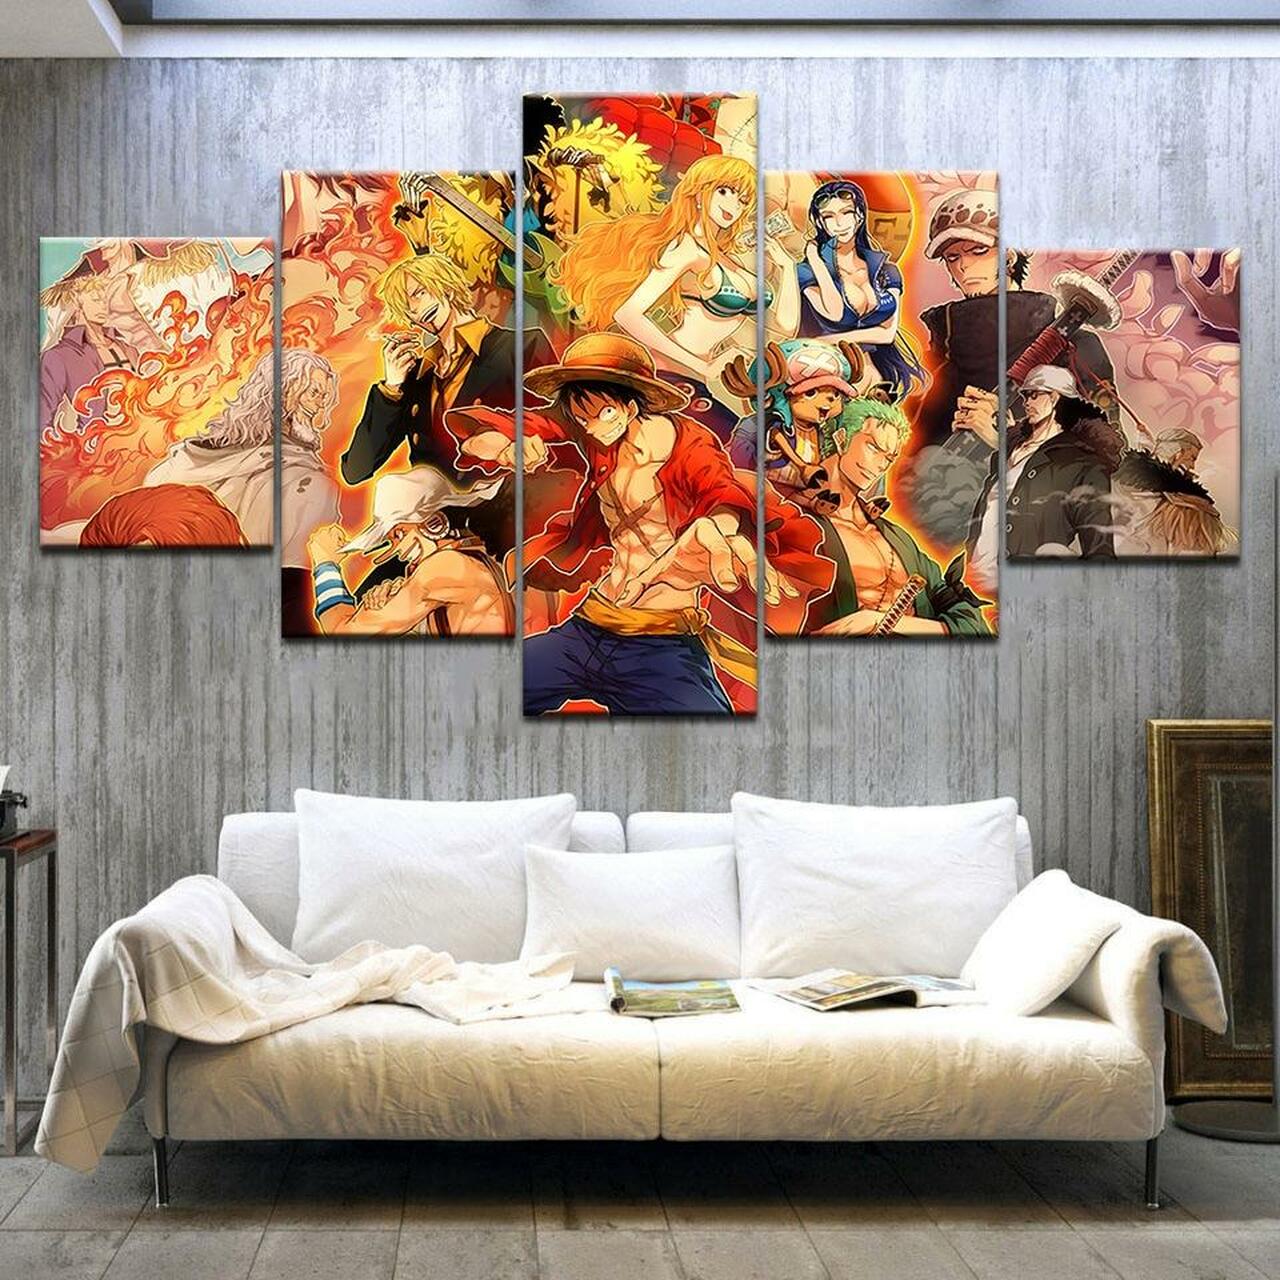 Your Name Japan – Anime 5 Piece Canvas Art Wall Decor – CA Go Canvas